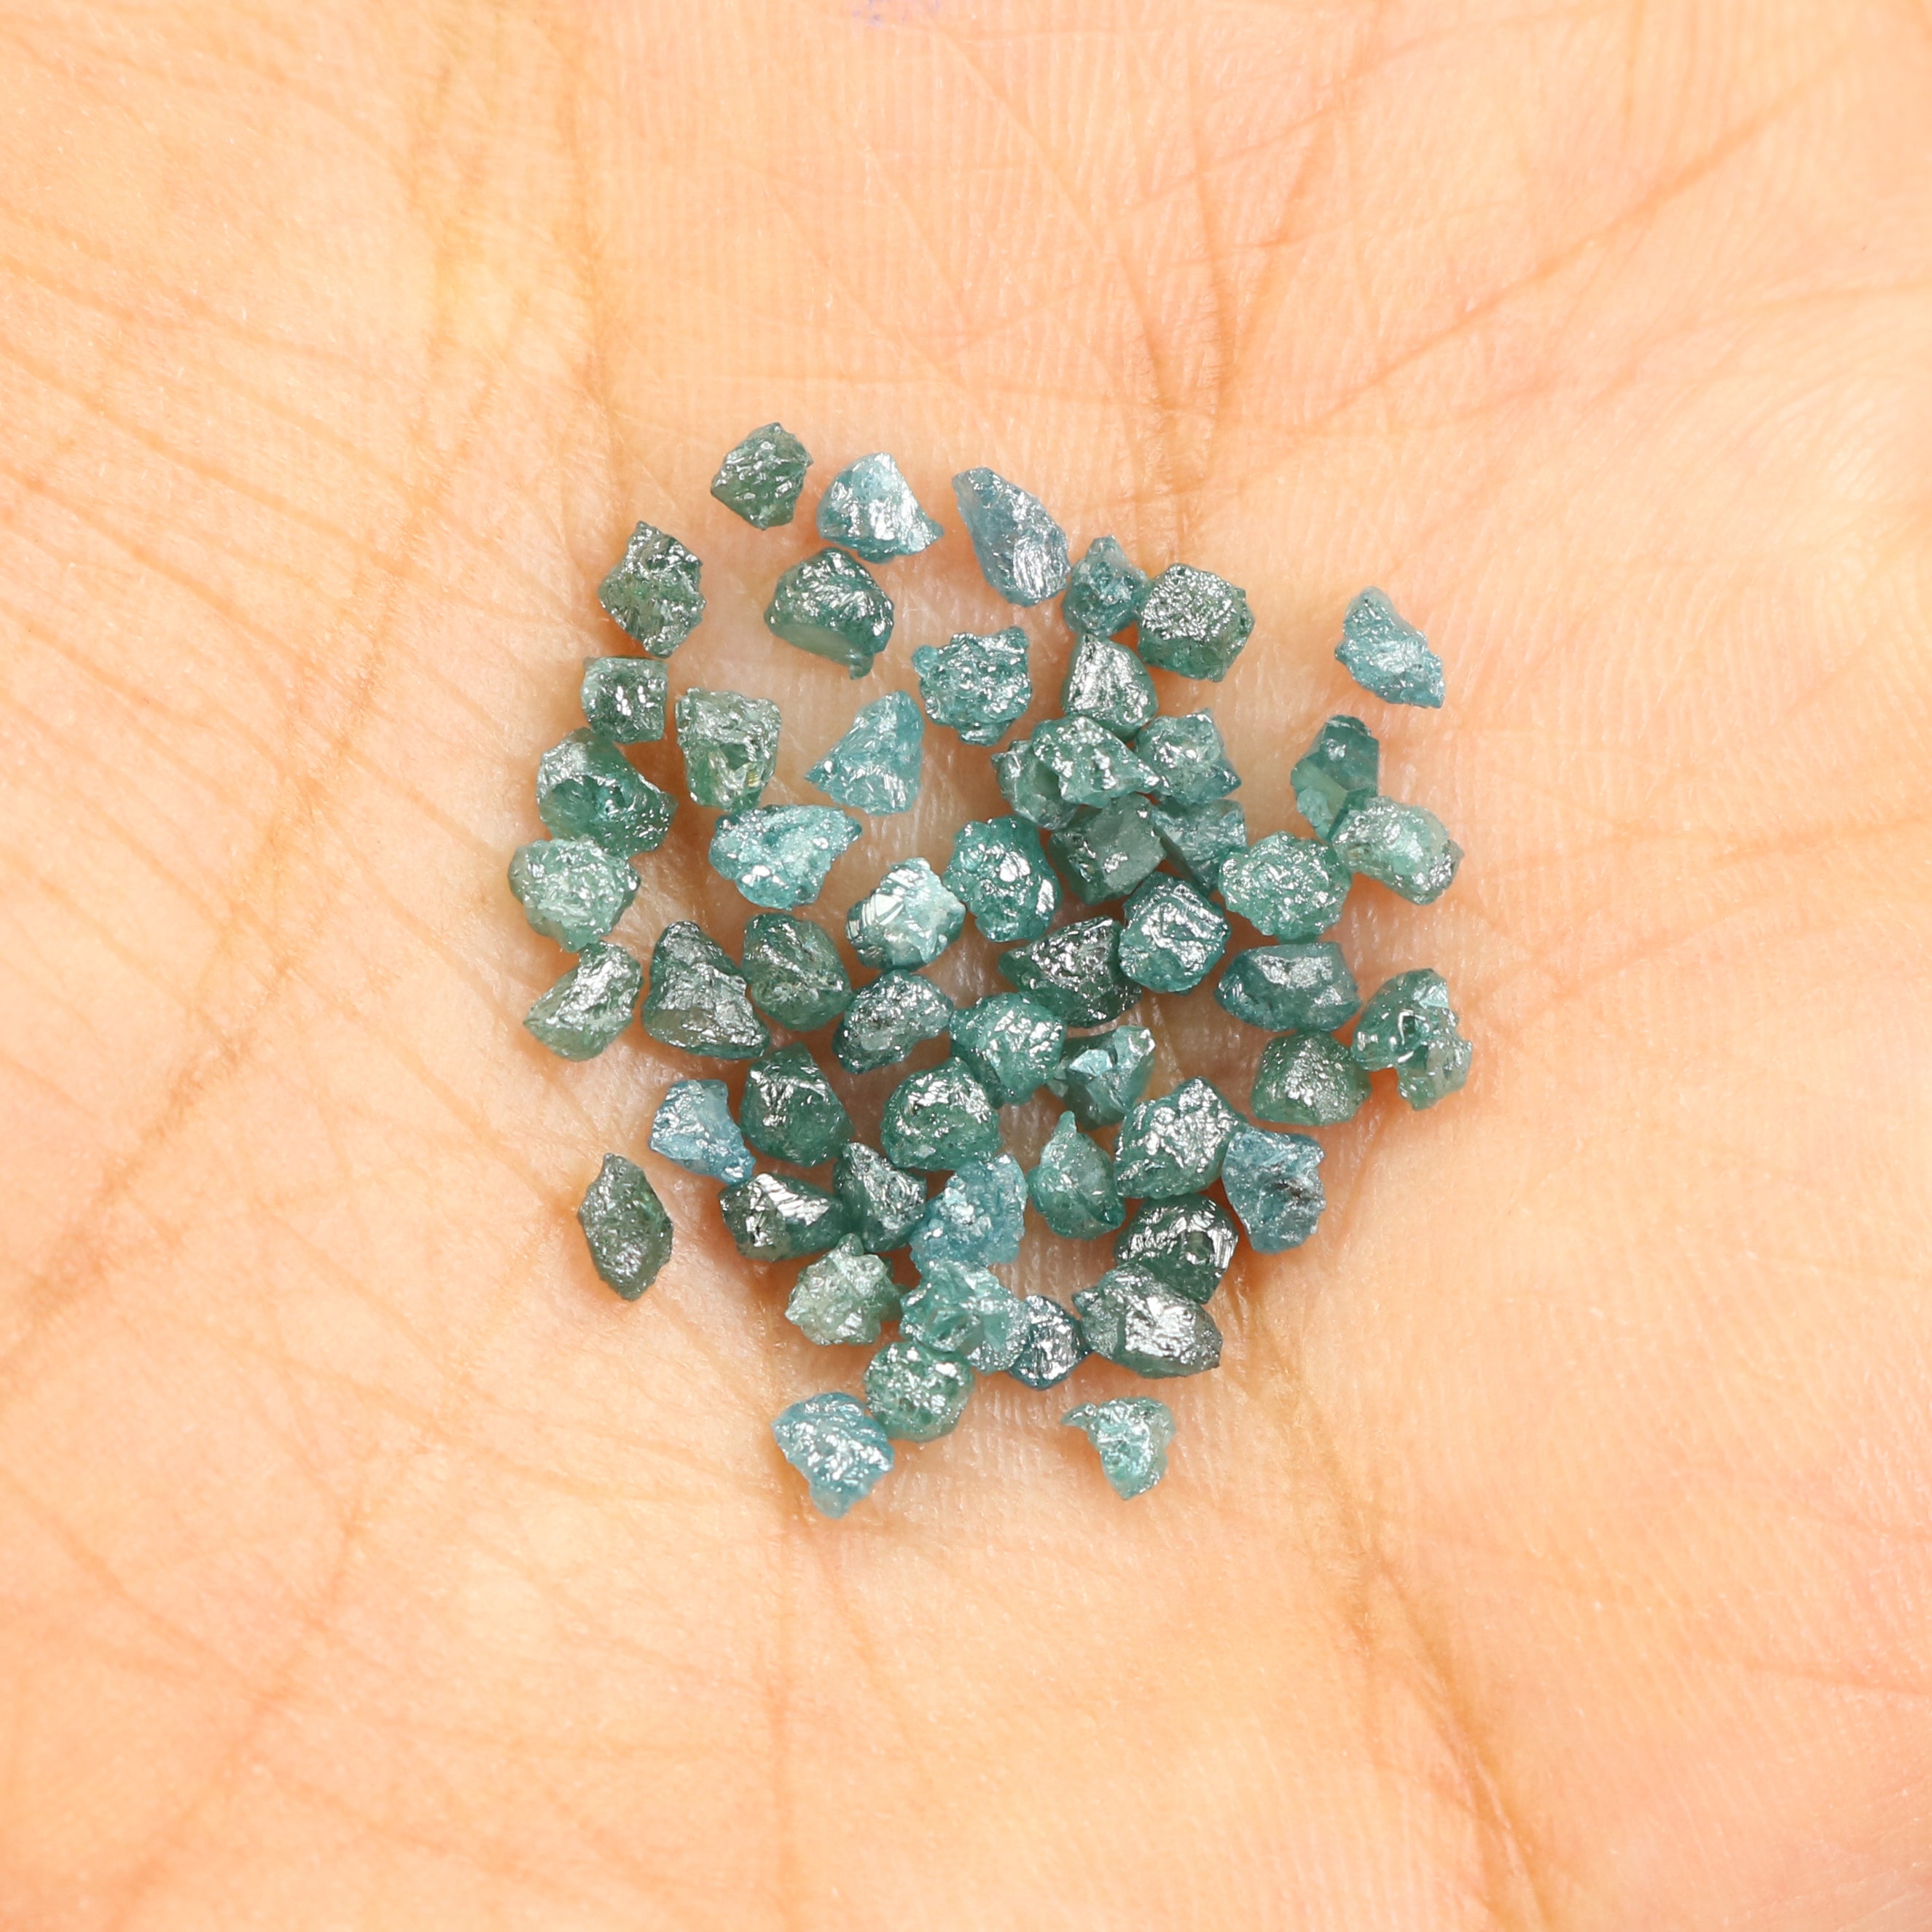 Natural Loose Rough Blue Color Diamond 5.03 CT 2.60 MM Rough Shape Rose Cut Diamond L1694